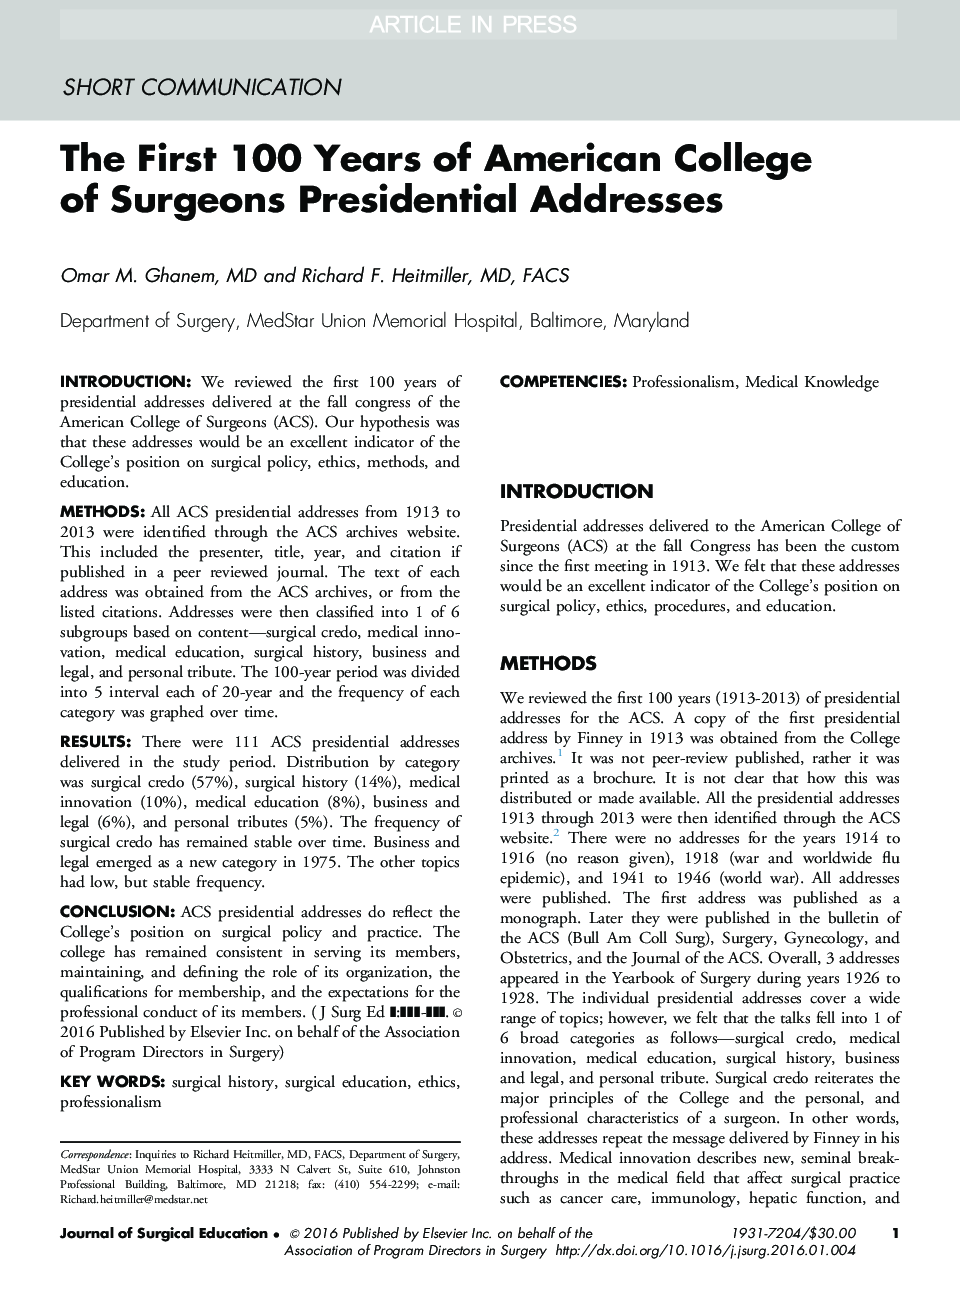 نخستین نامه سالانه کالج جراحان آمریکایی در ریاست جمهوری 